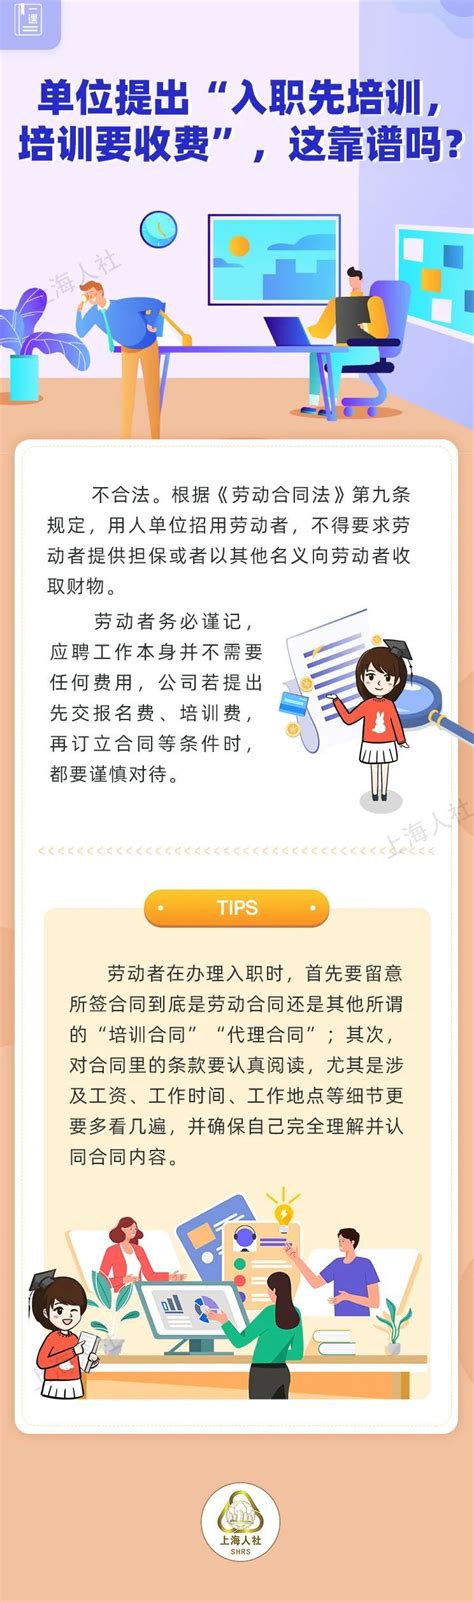 贵阳网上办理身份证流程